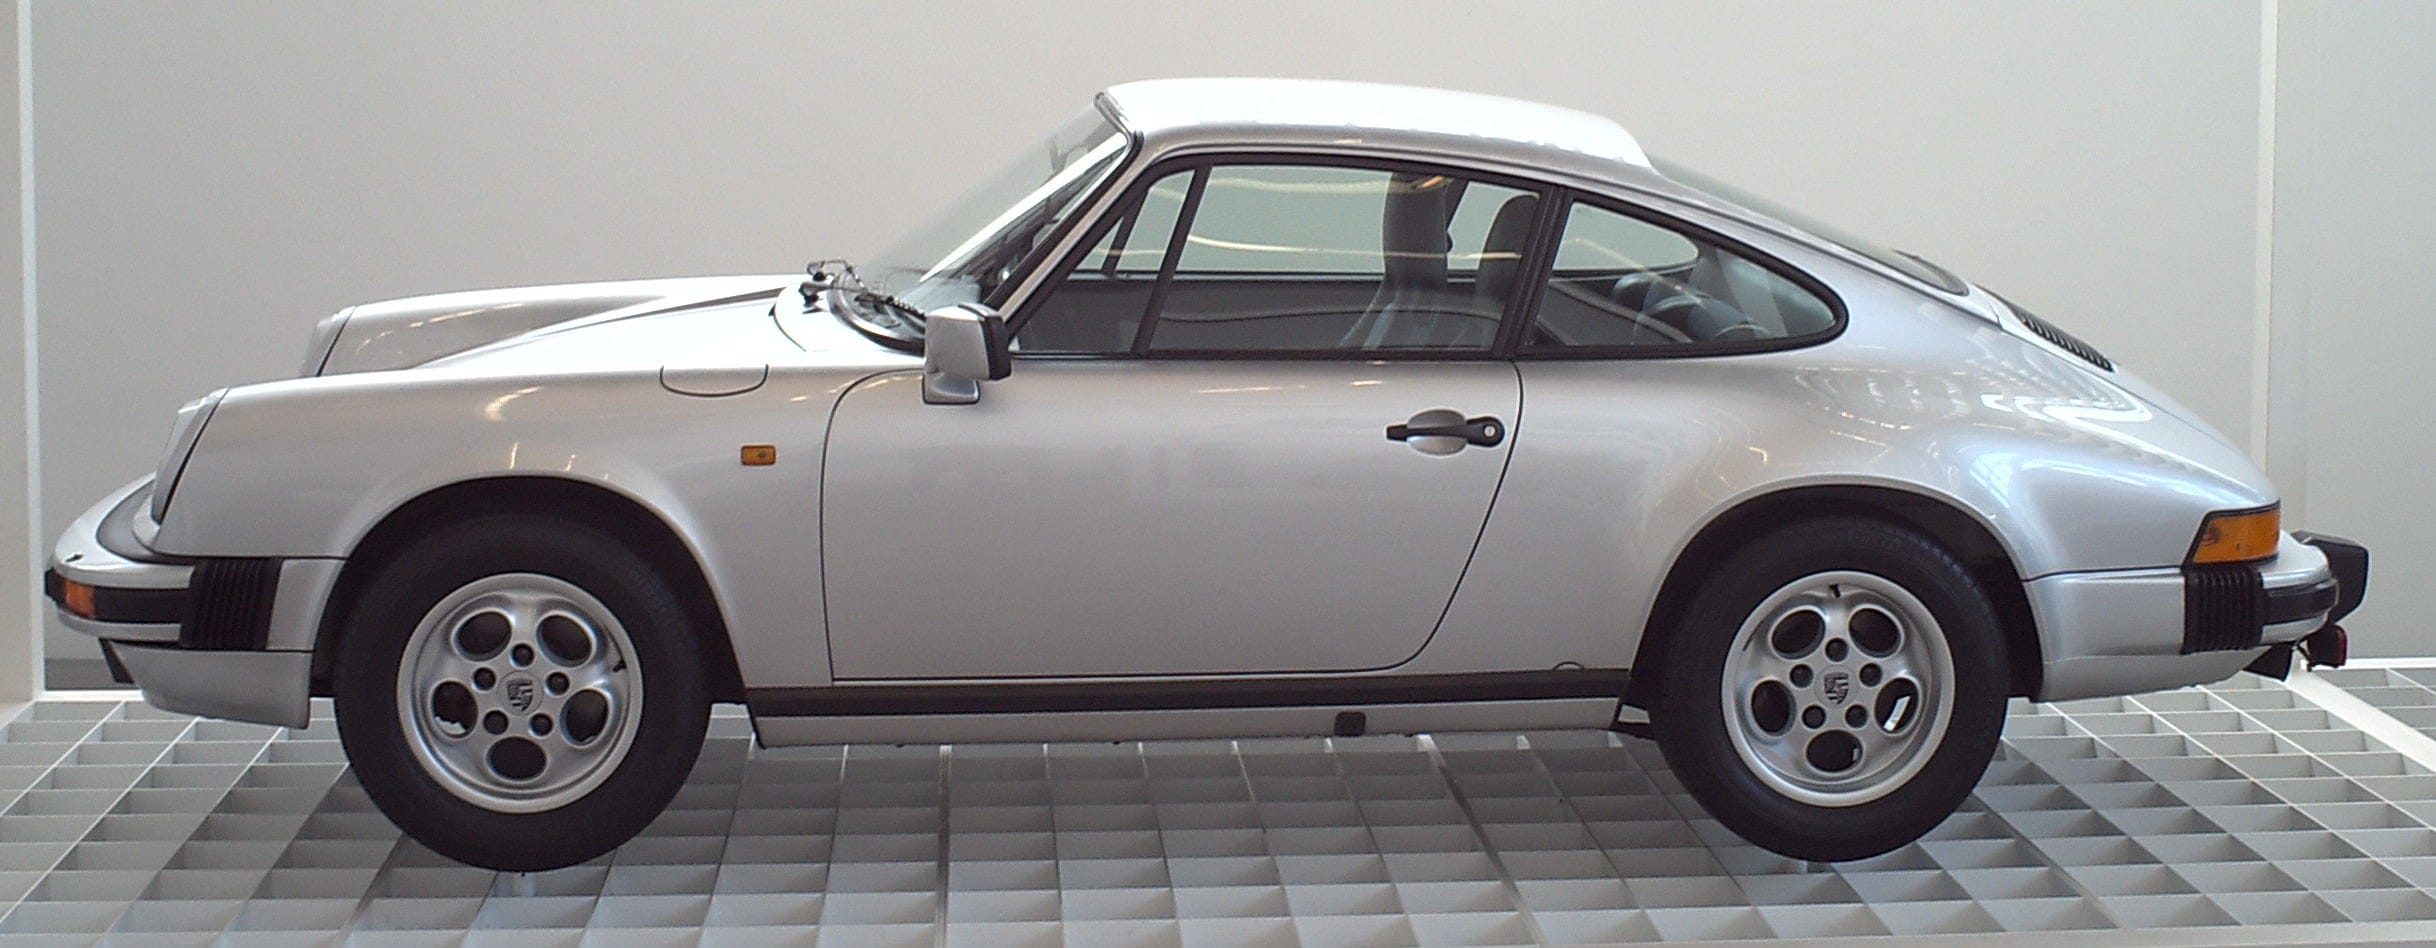 Sportwagen 'Porsche 911', Modell SC 1986, Design stammte von Ferdinand Alexander Porsche (*1935)